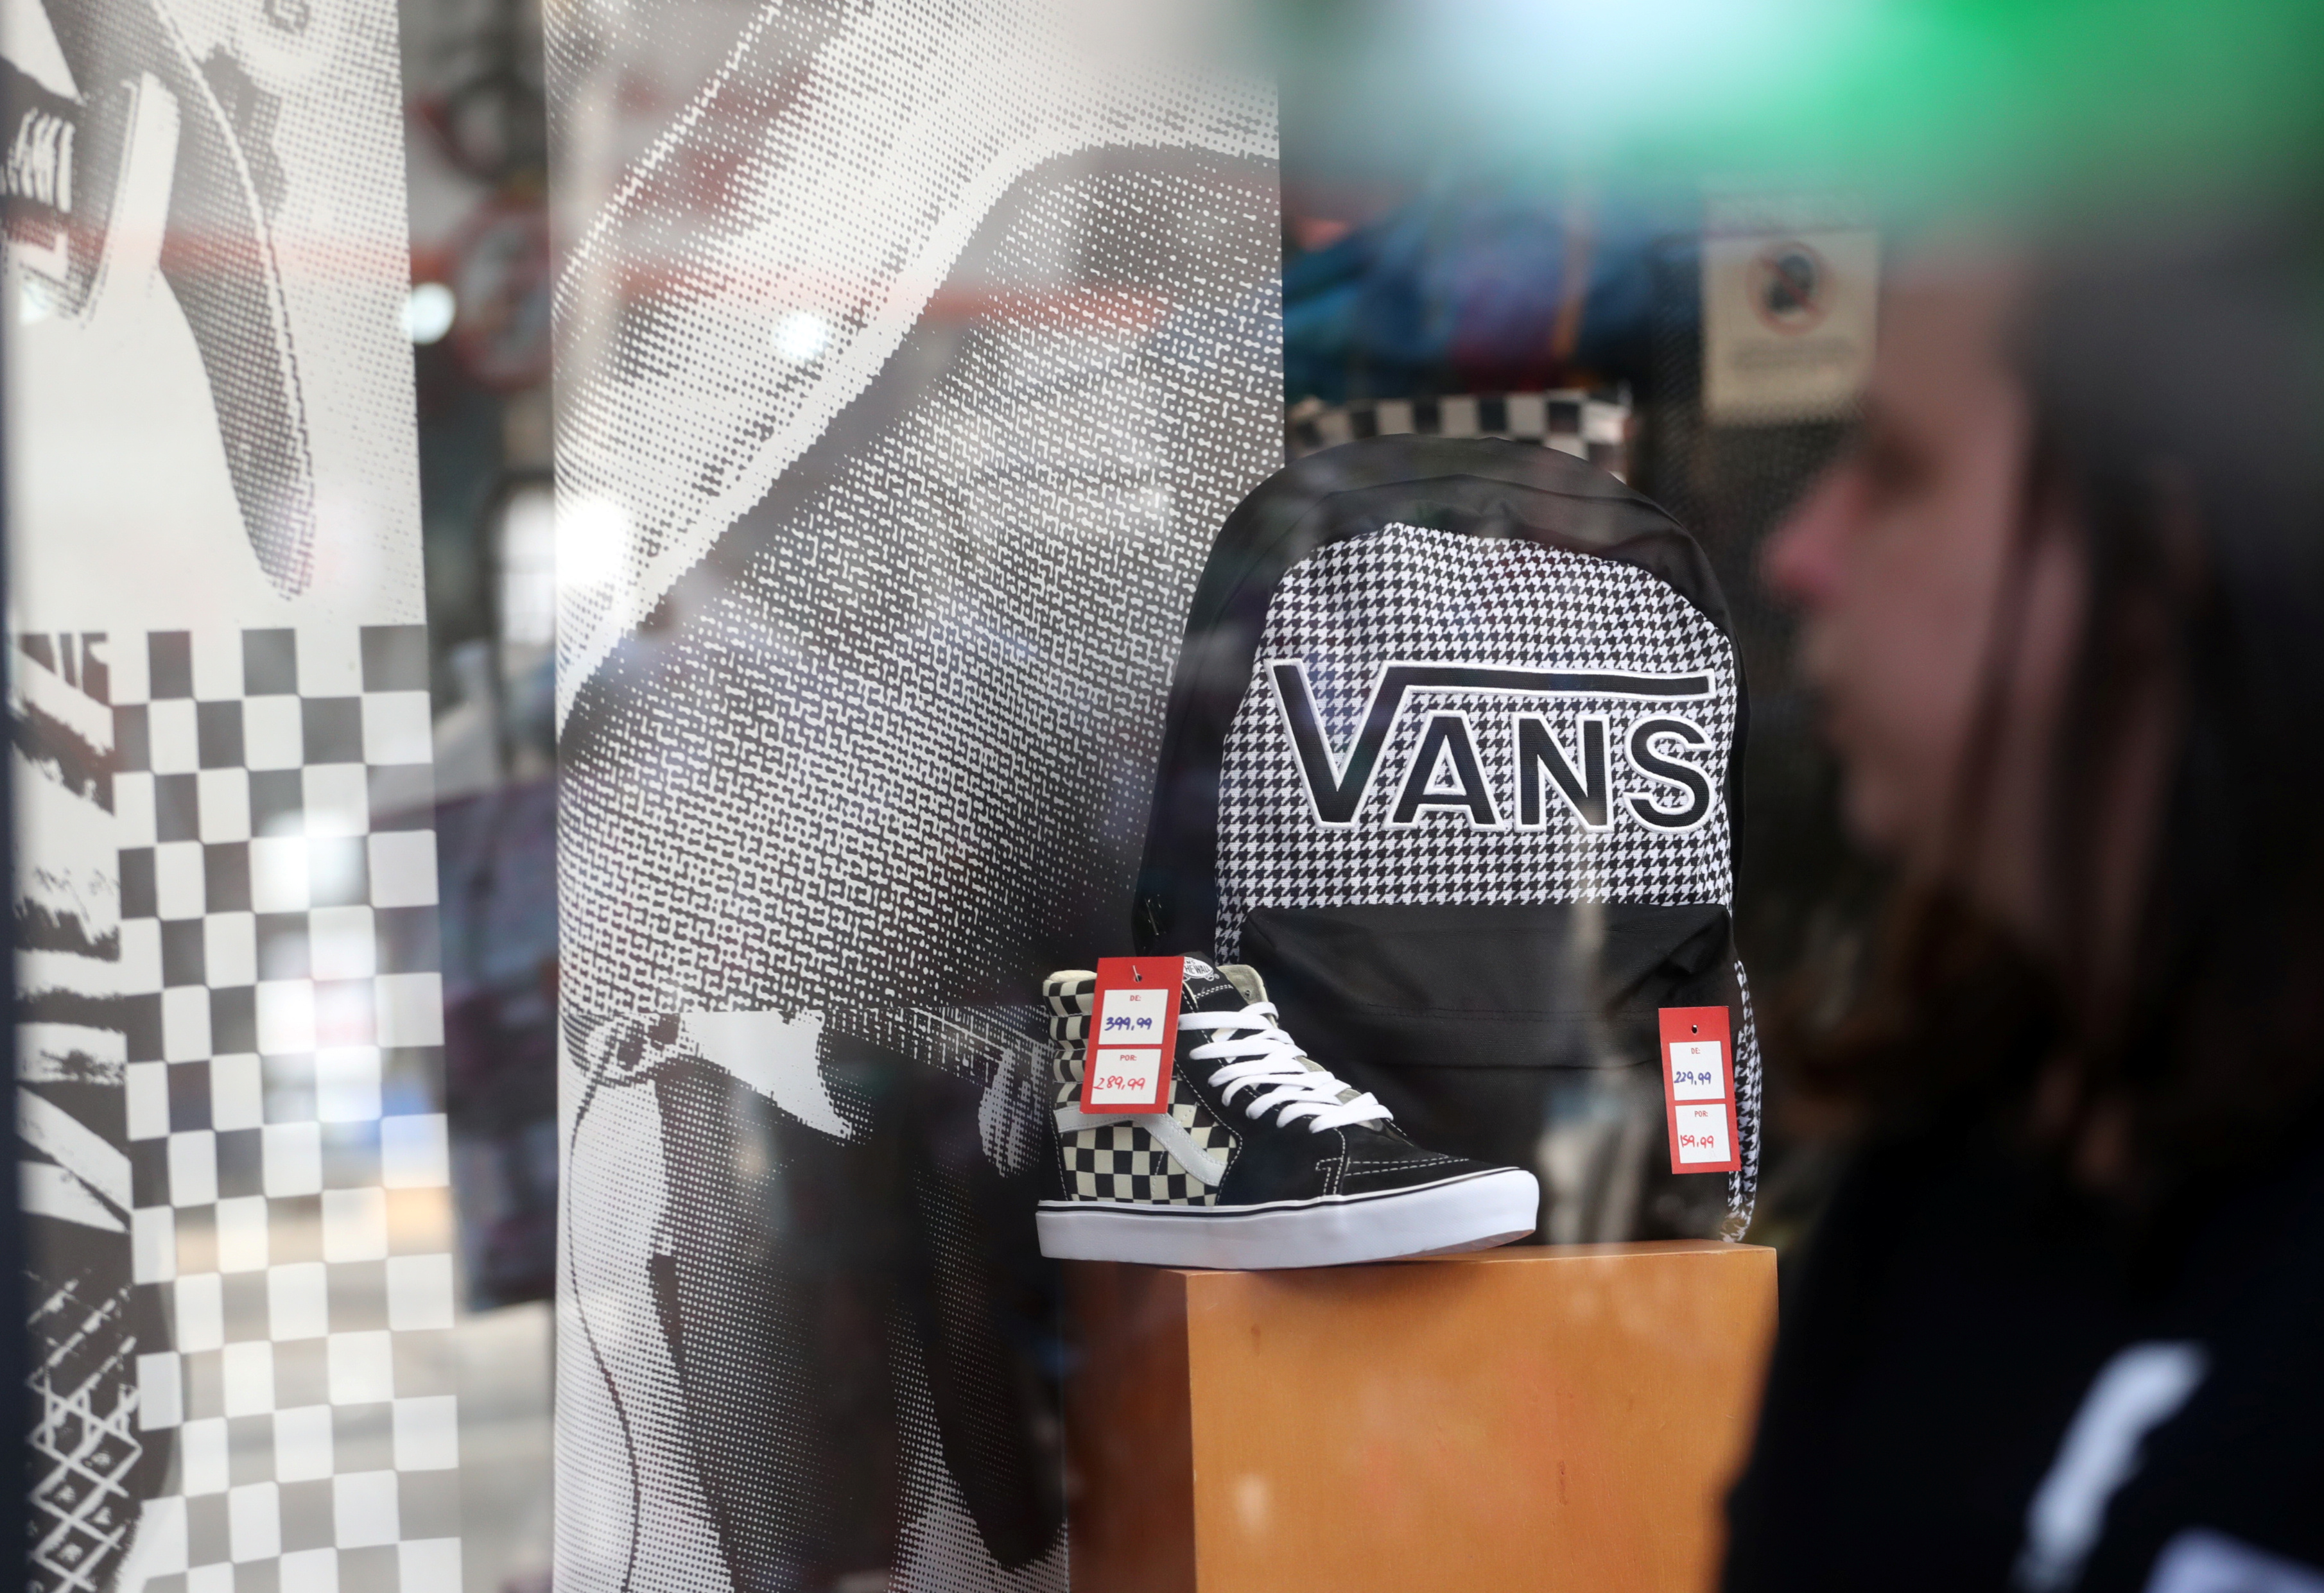 Vans sneaker maker VF sales stumble on supply | Reuters